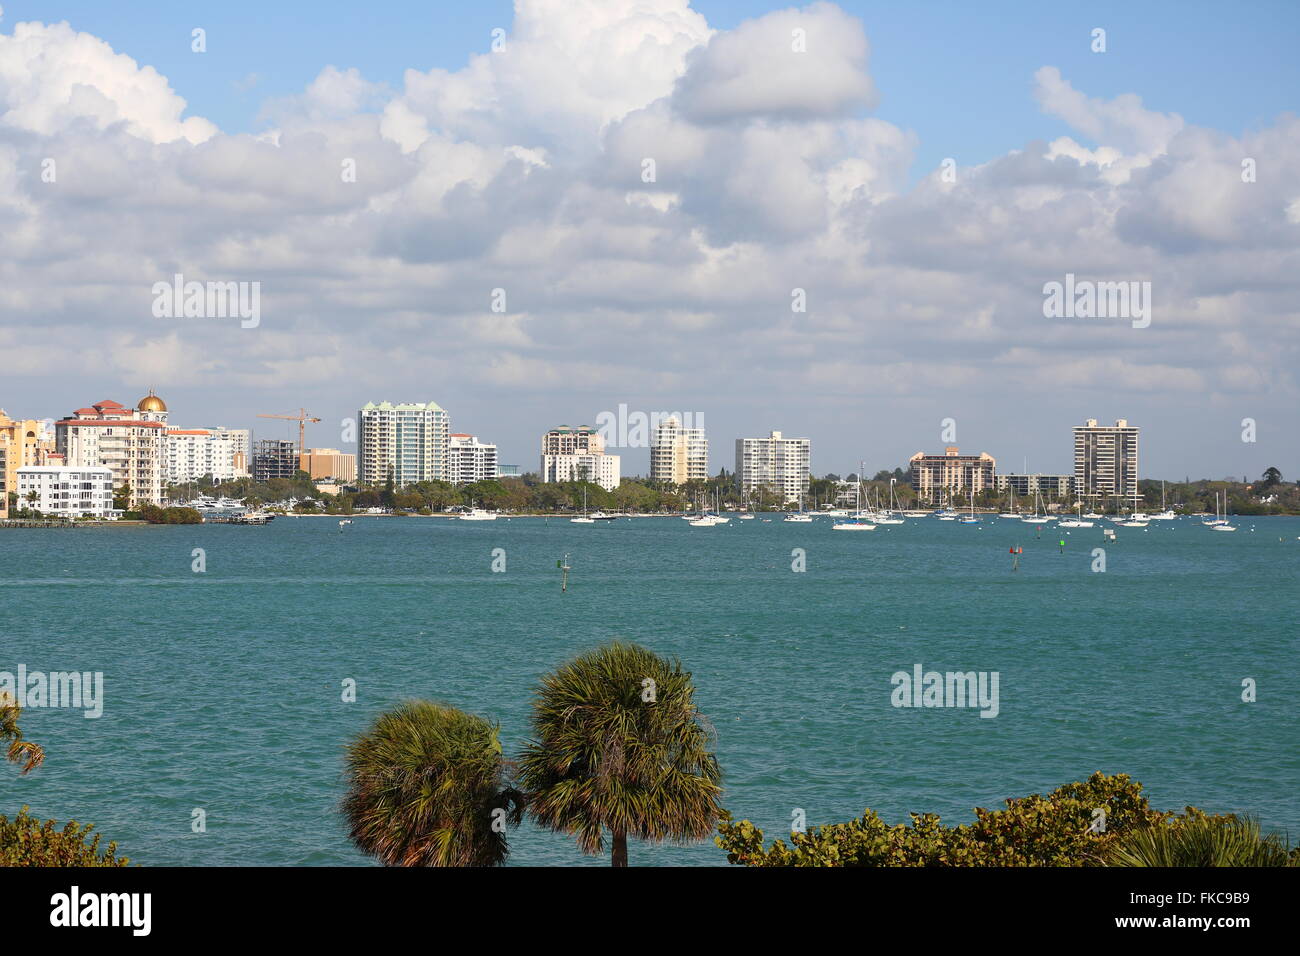 View over Sarasota Bay, Sarasota, Florida, USA Stock Photo